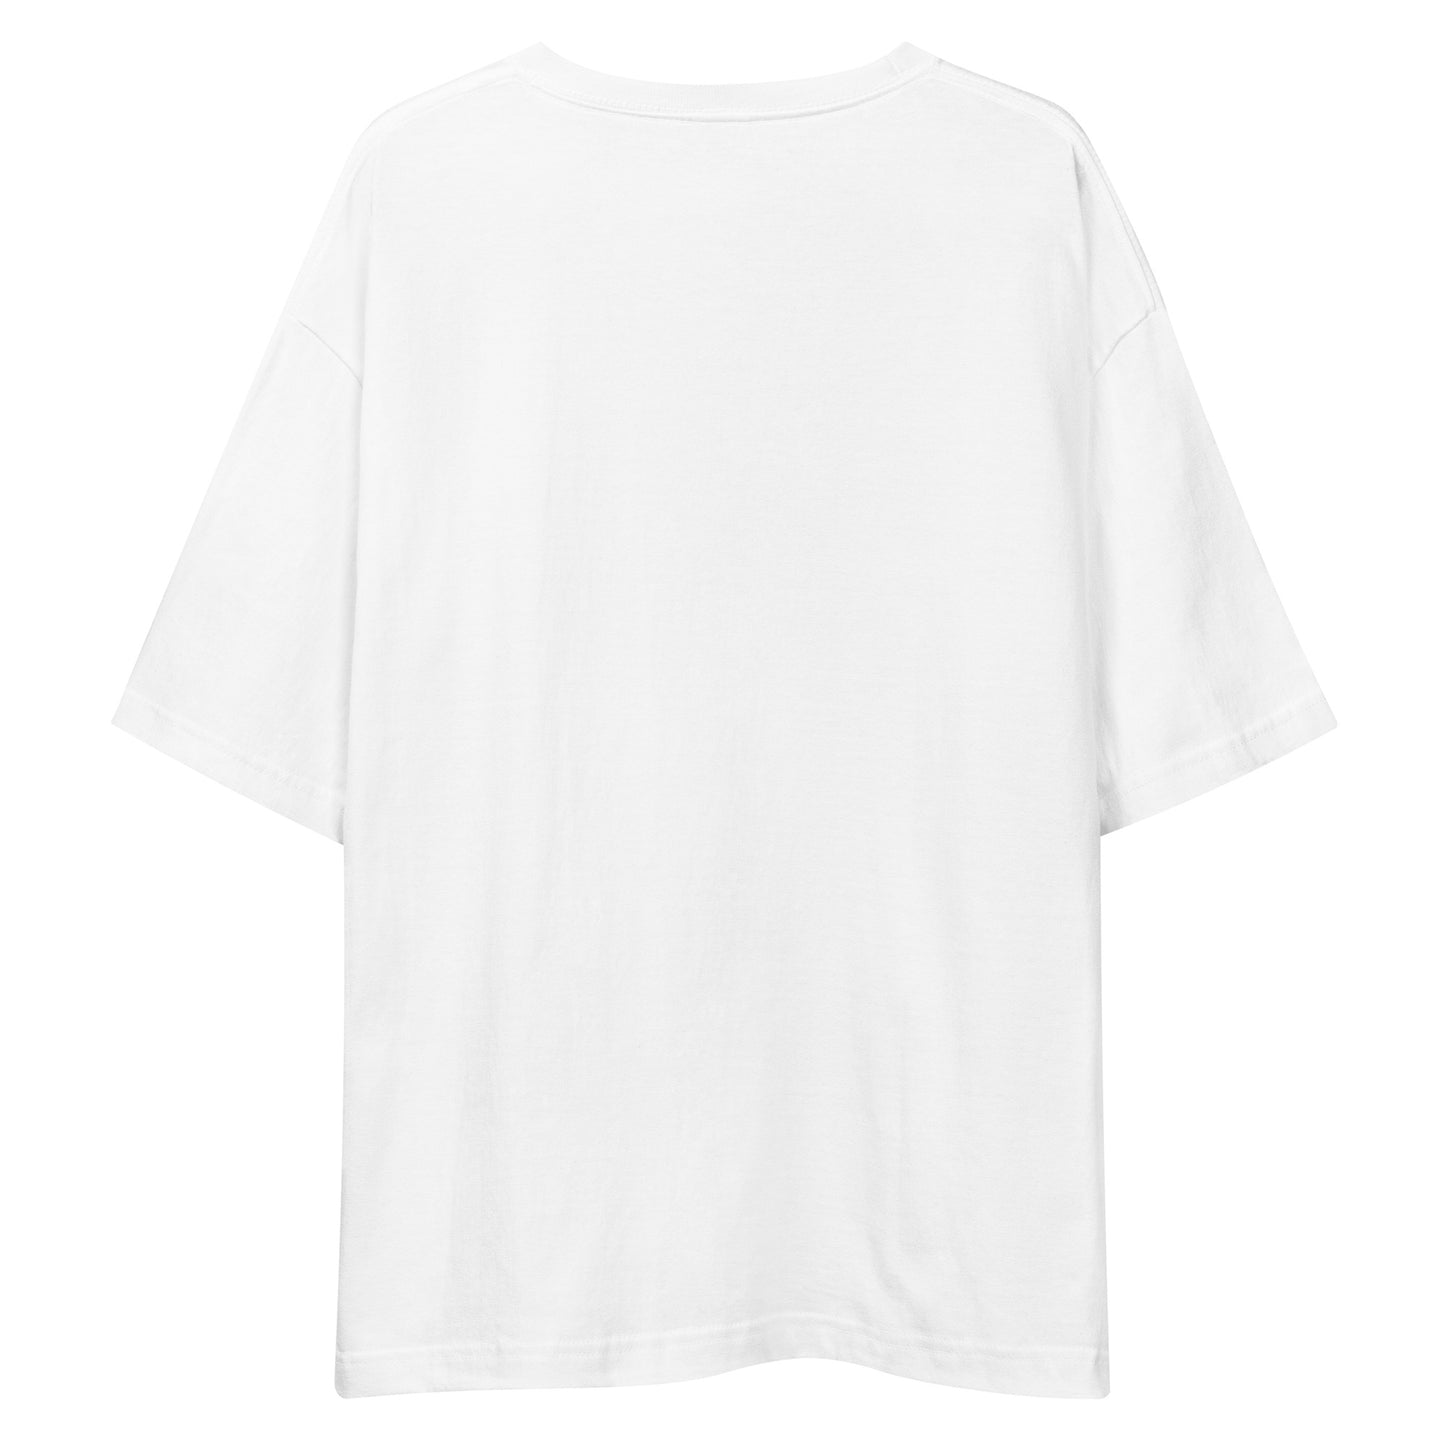 E246 - เสื้อยืด/ภาพเงาใหญ่ (วิบากชนะ/ผู้หญิง : สีขาว/สีดำ)